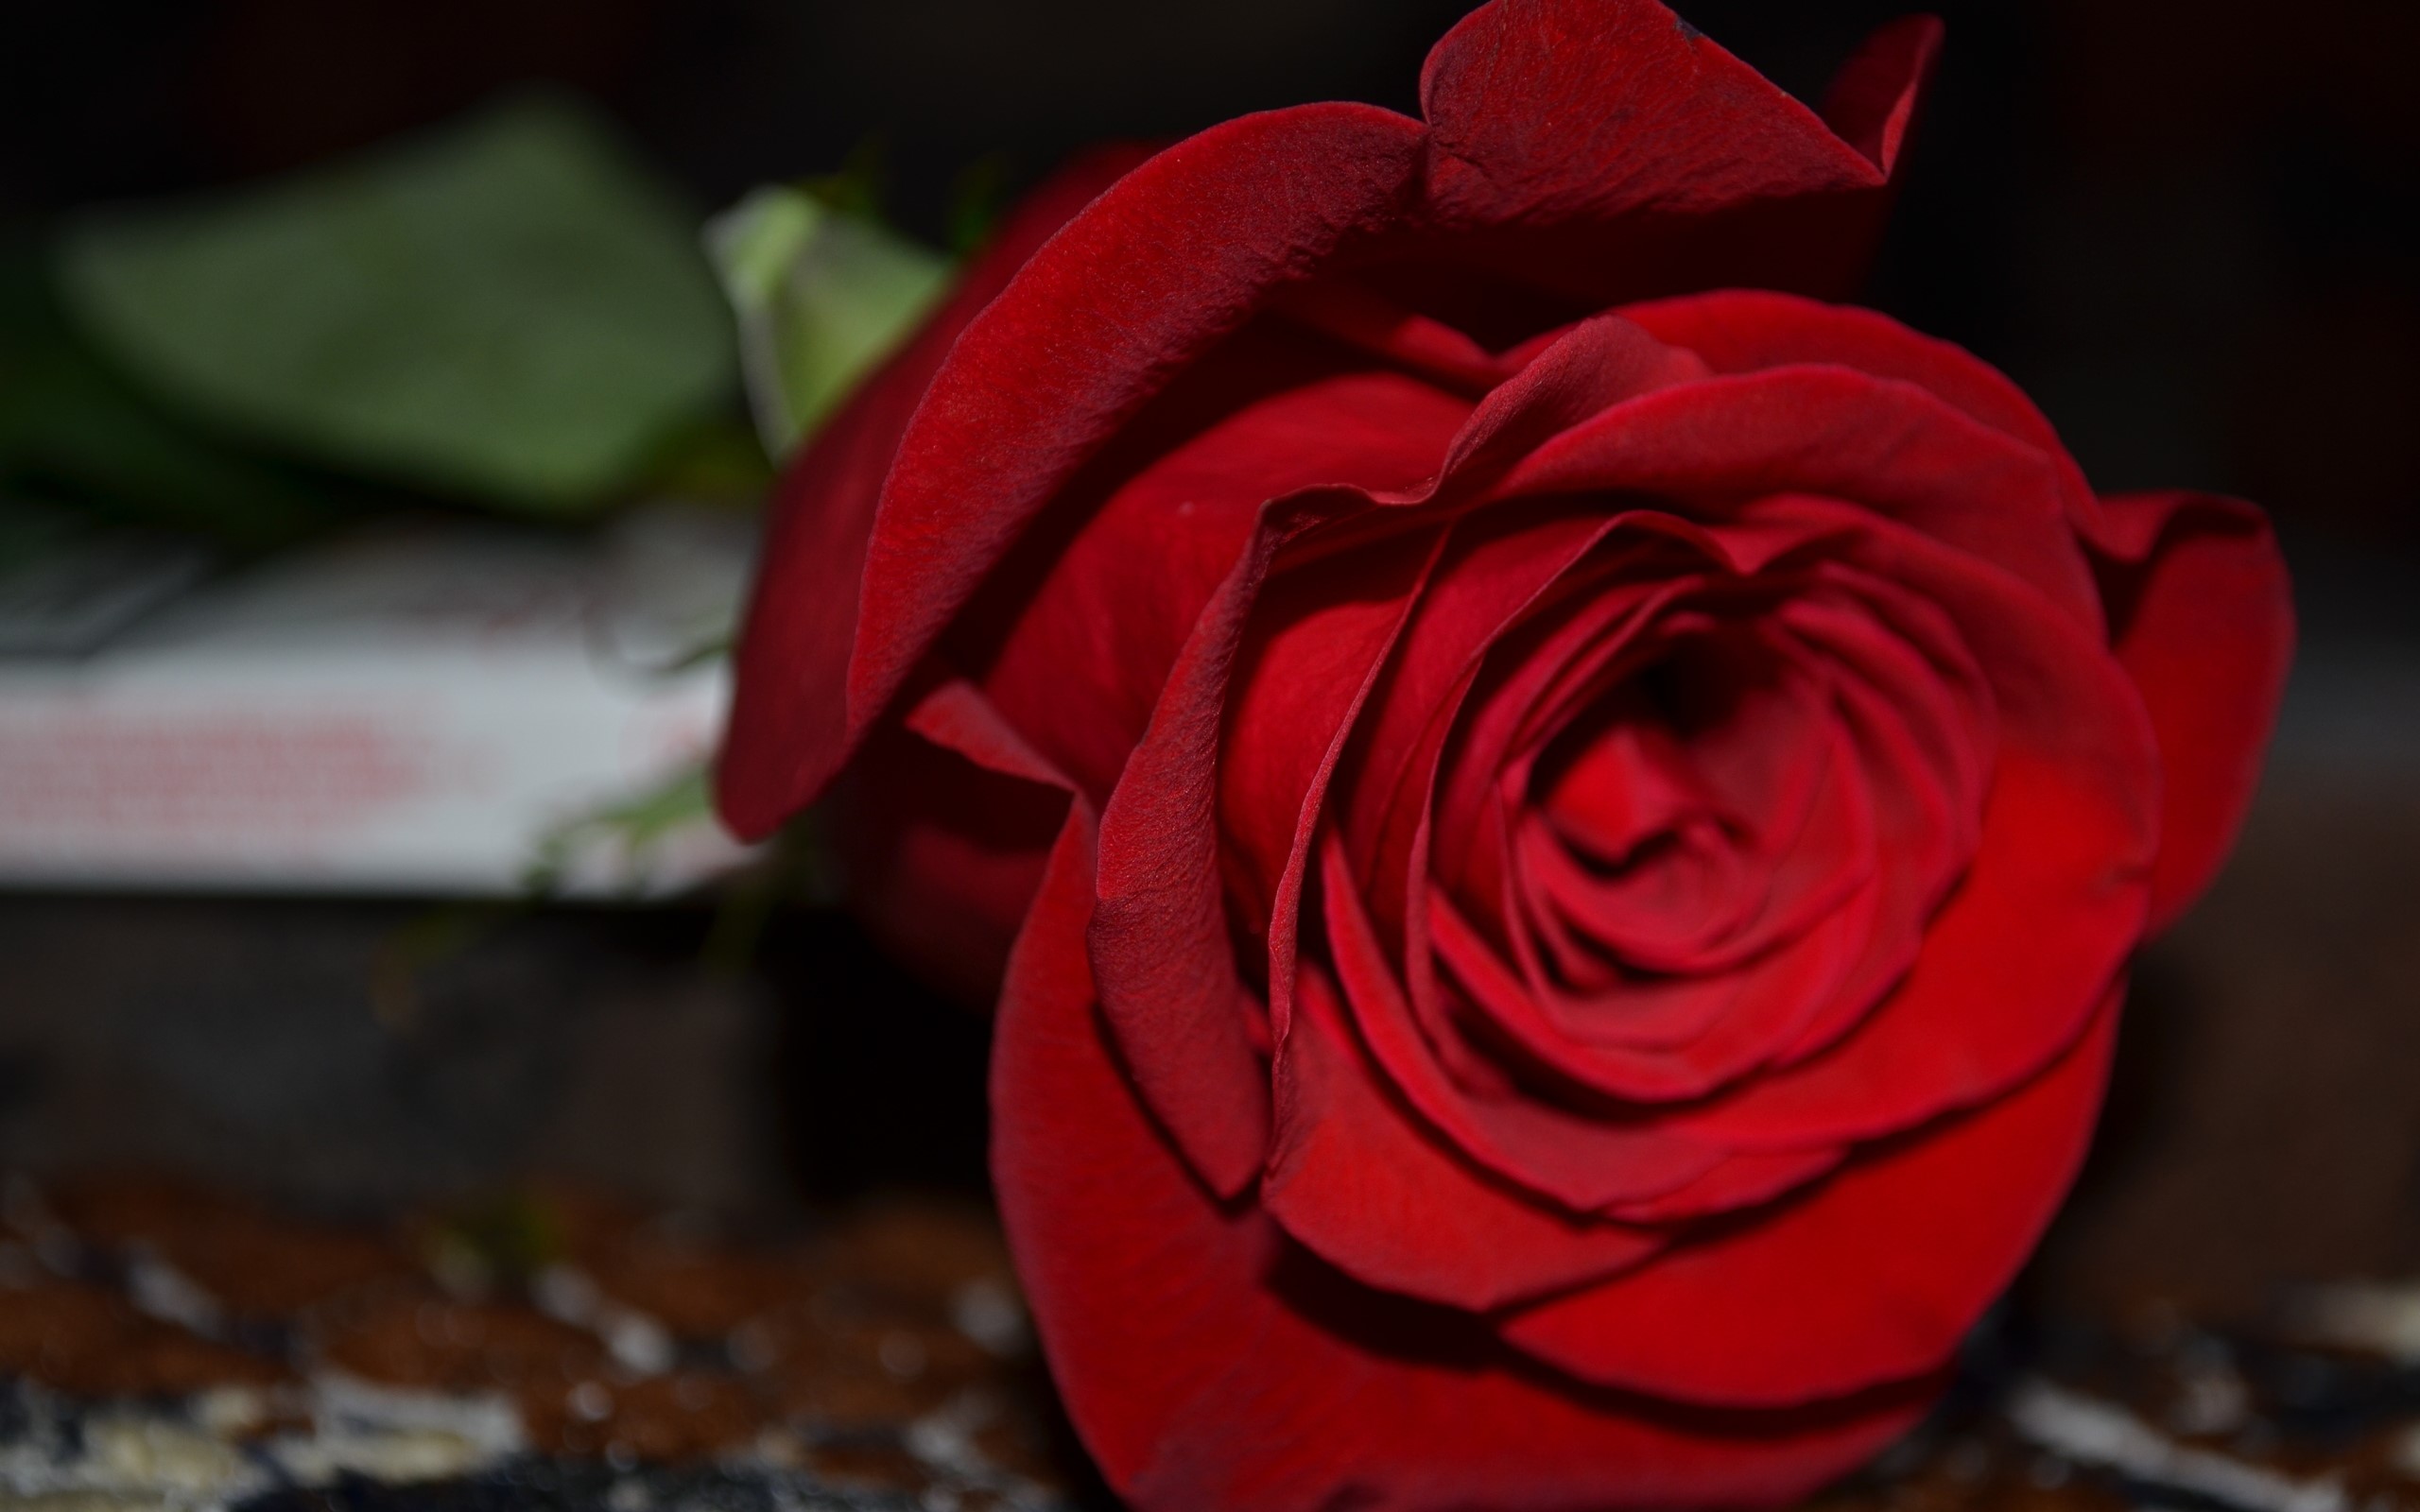 tapete mawar merah,rot,gartenrosen,rose,blütenblatt,blume